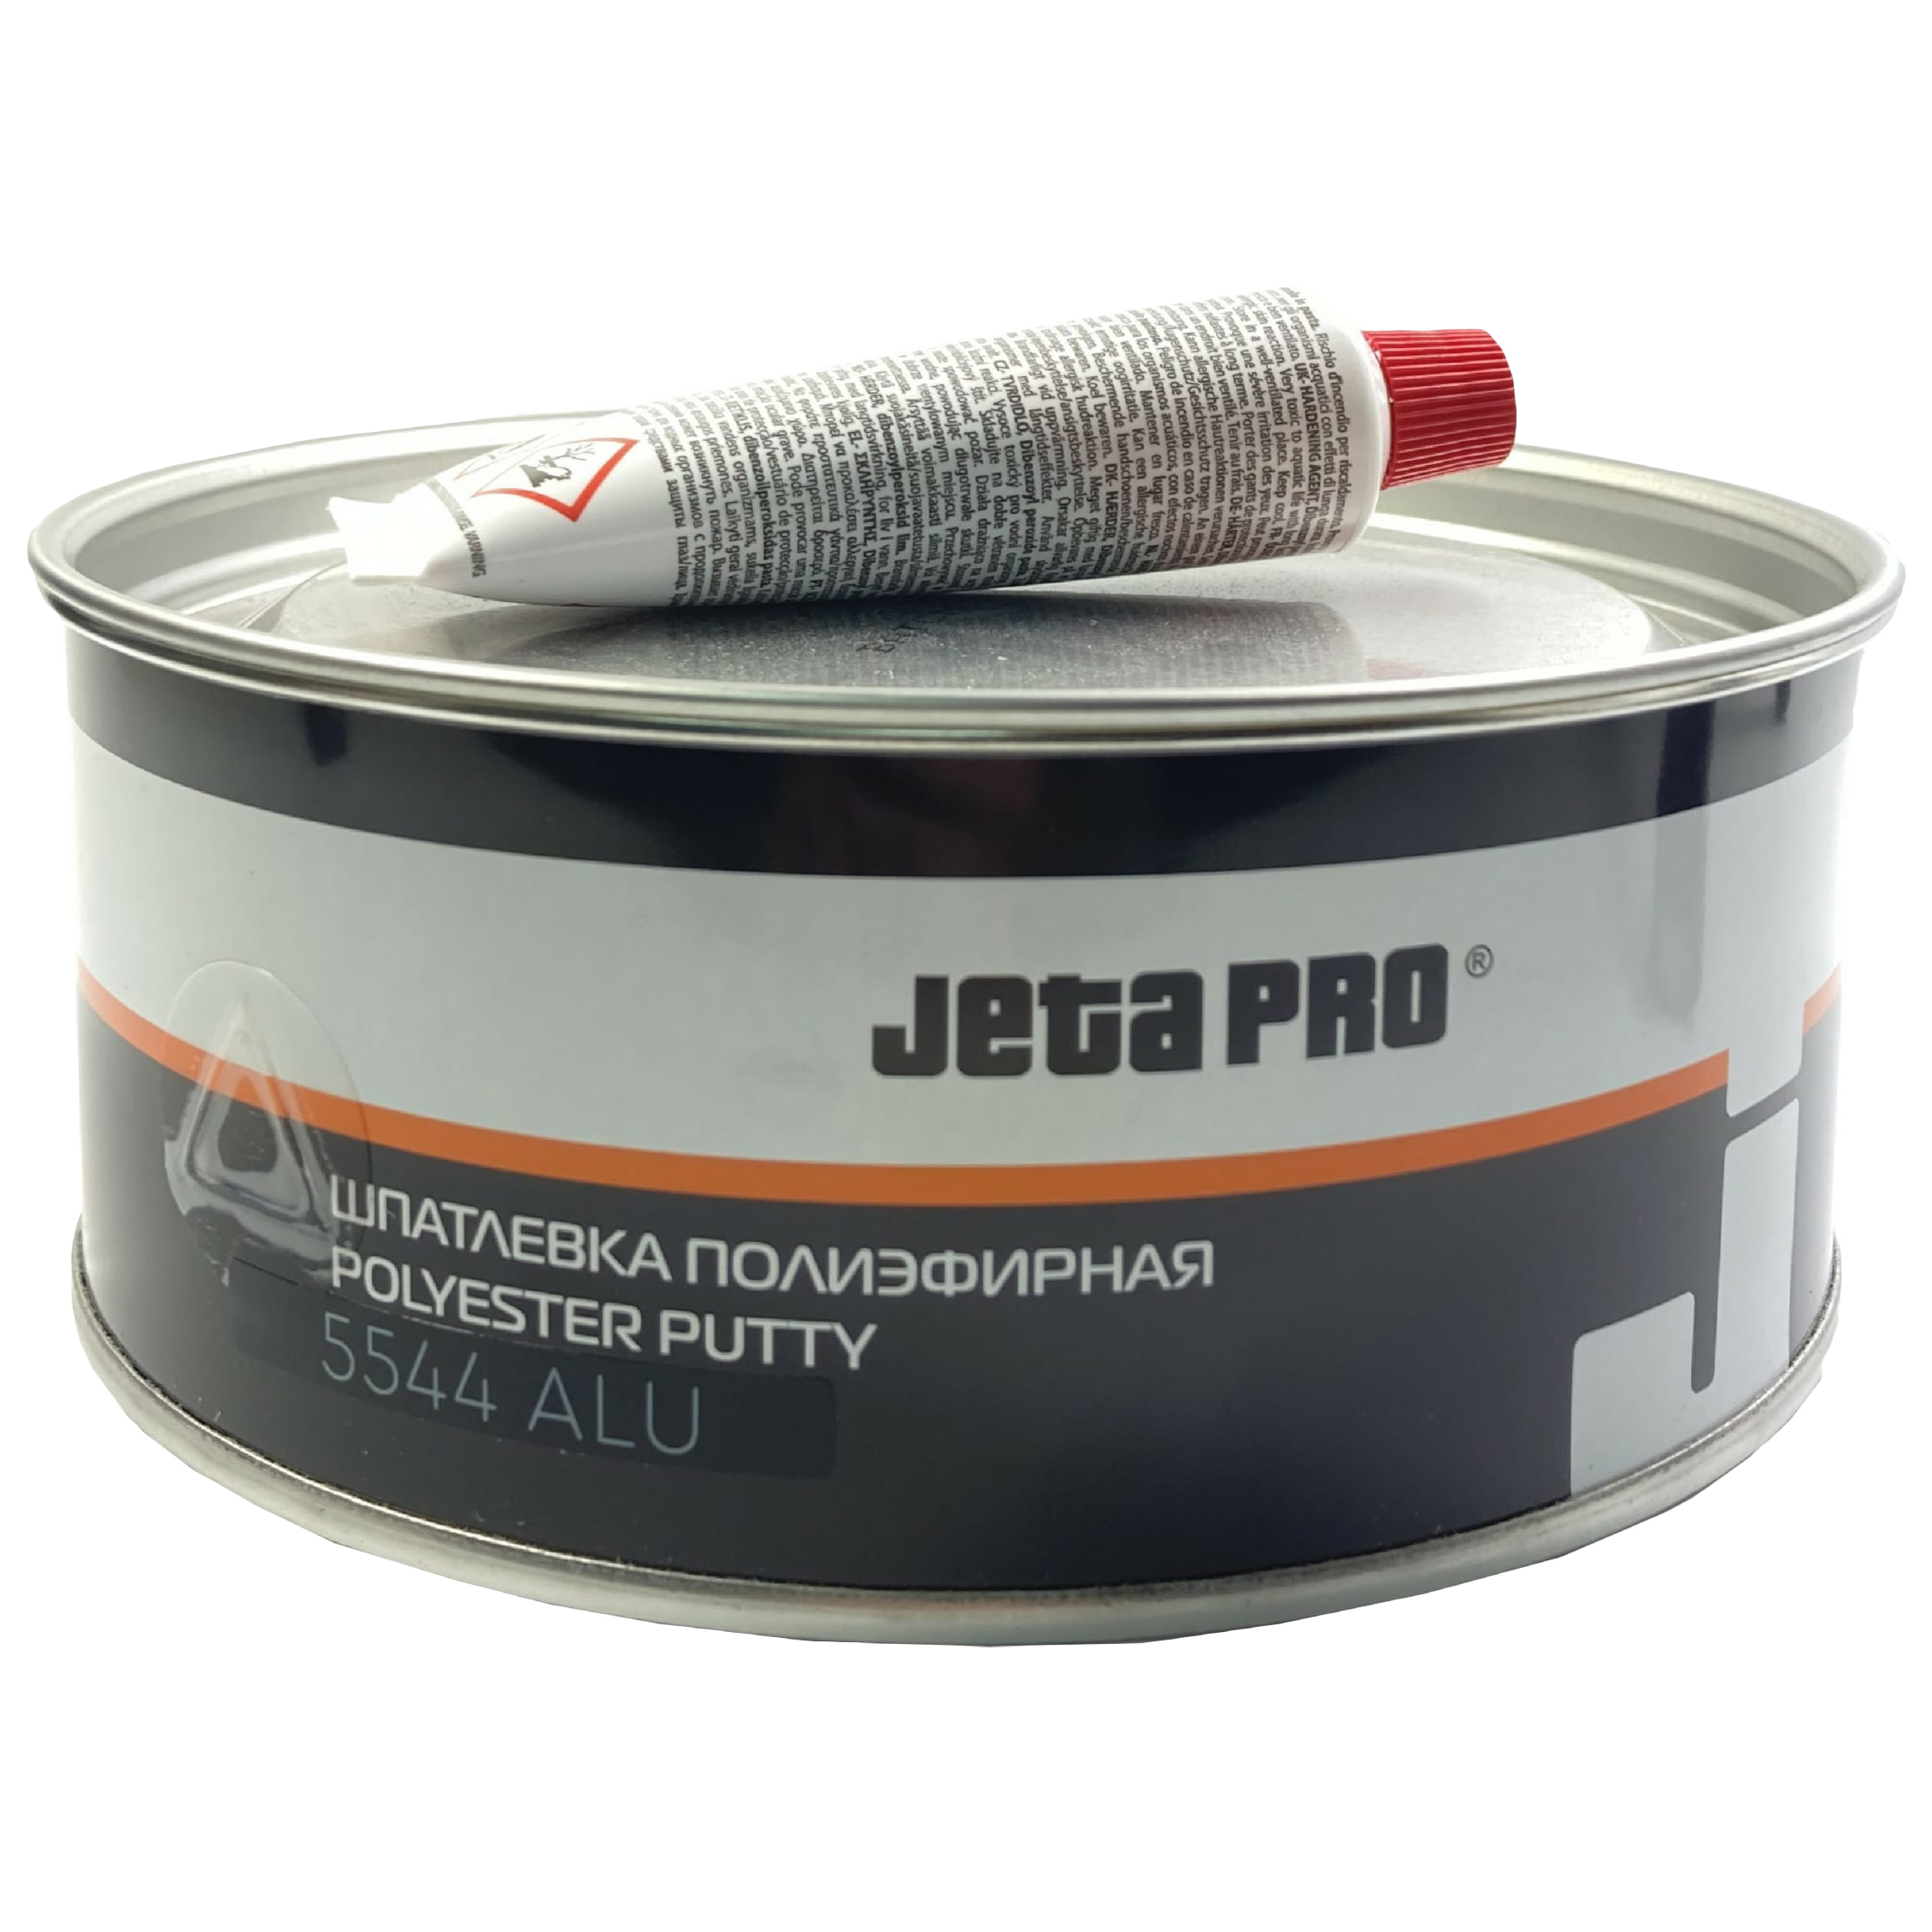 Шпатлевка автомобильная Jeta Pro 5544/0,25 ALU, алюминевая, 250 гр.